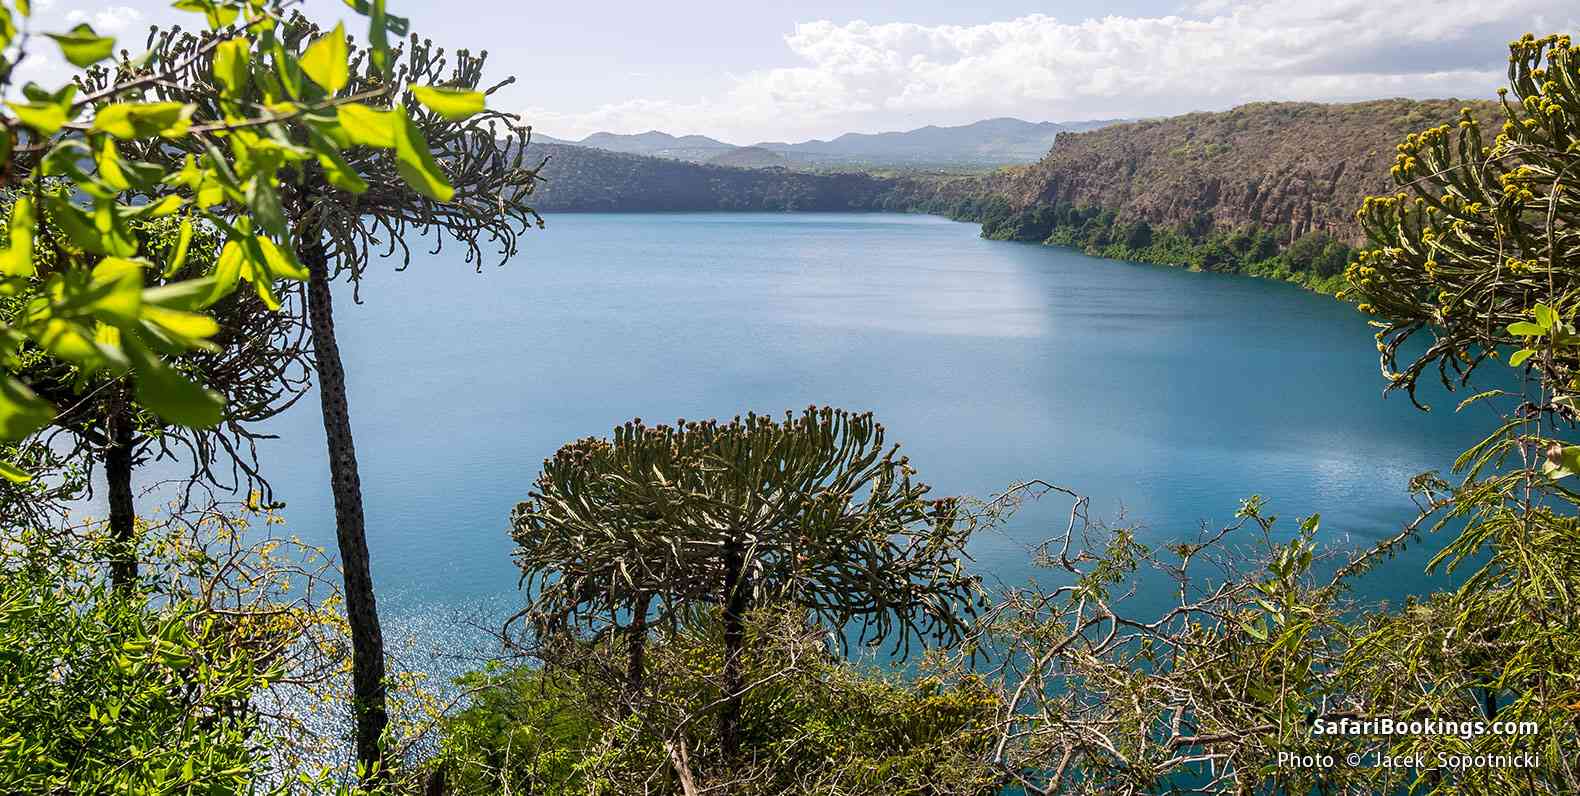 Lake Chala, crater lake on the border of Kenya and Tanzania